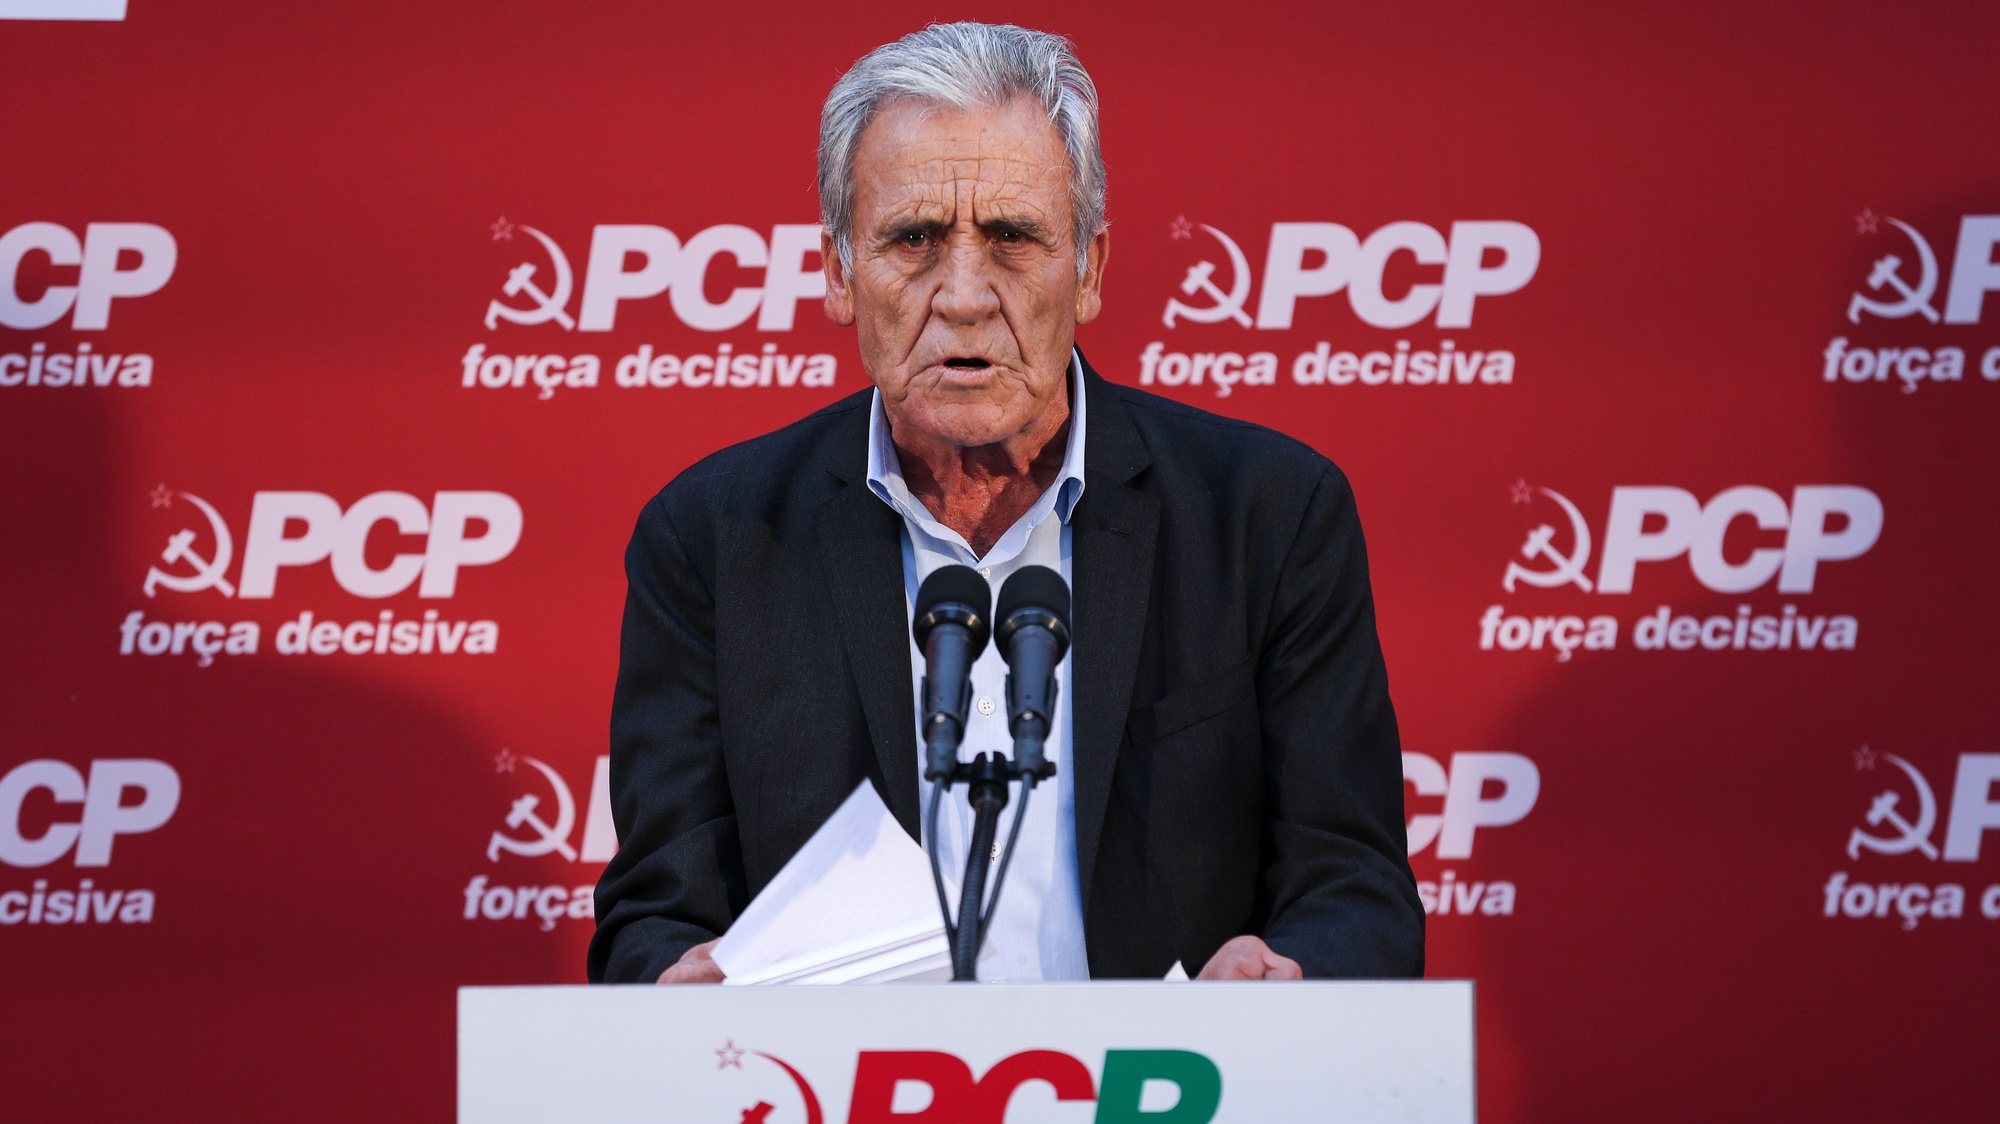 O secretário-geral do Partido Comunista Português (PCP), Jerónimo de Sousa, discursa durante o Comício &quot;PCP - Força decisiva ao teu lado todos os dias&quot;, Lisboa, 01 de outubro de 2021. MANUEL DE ALMEIDA/LUSA